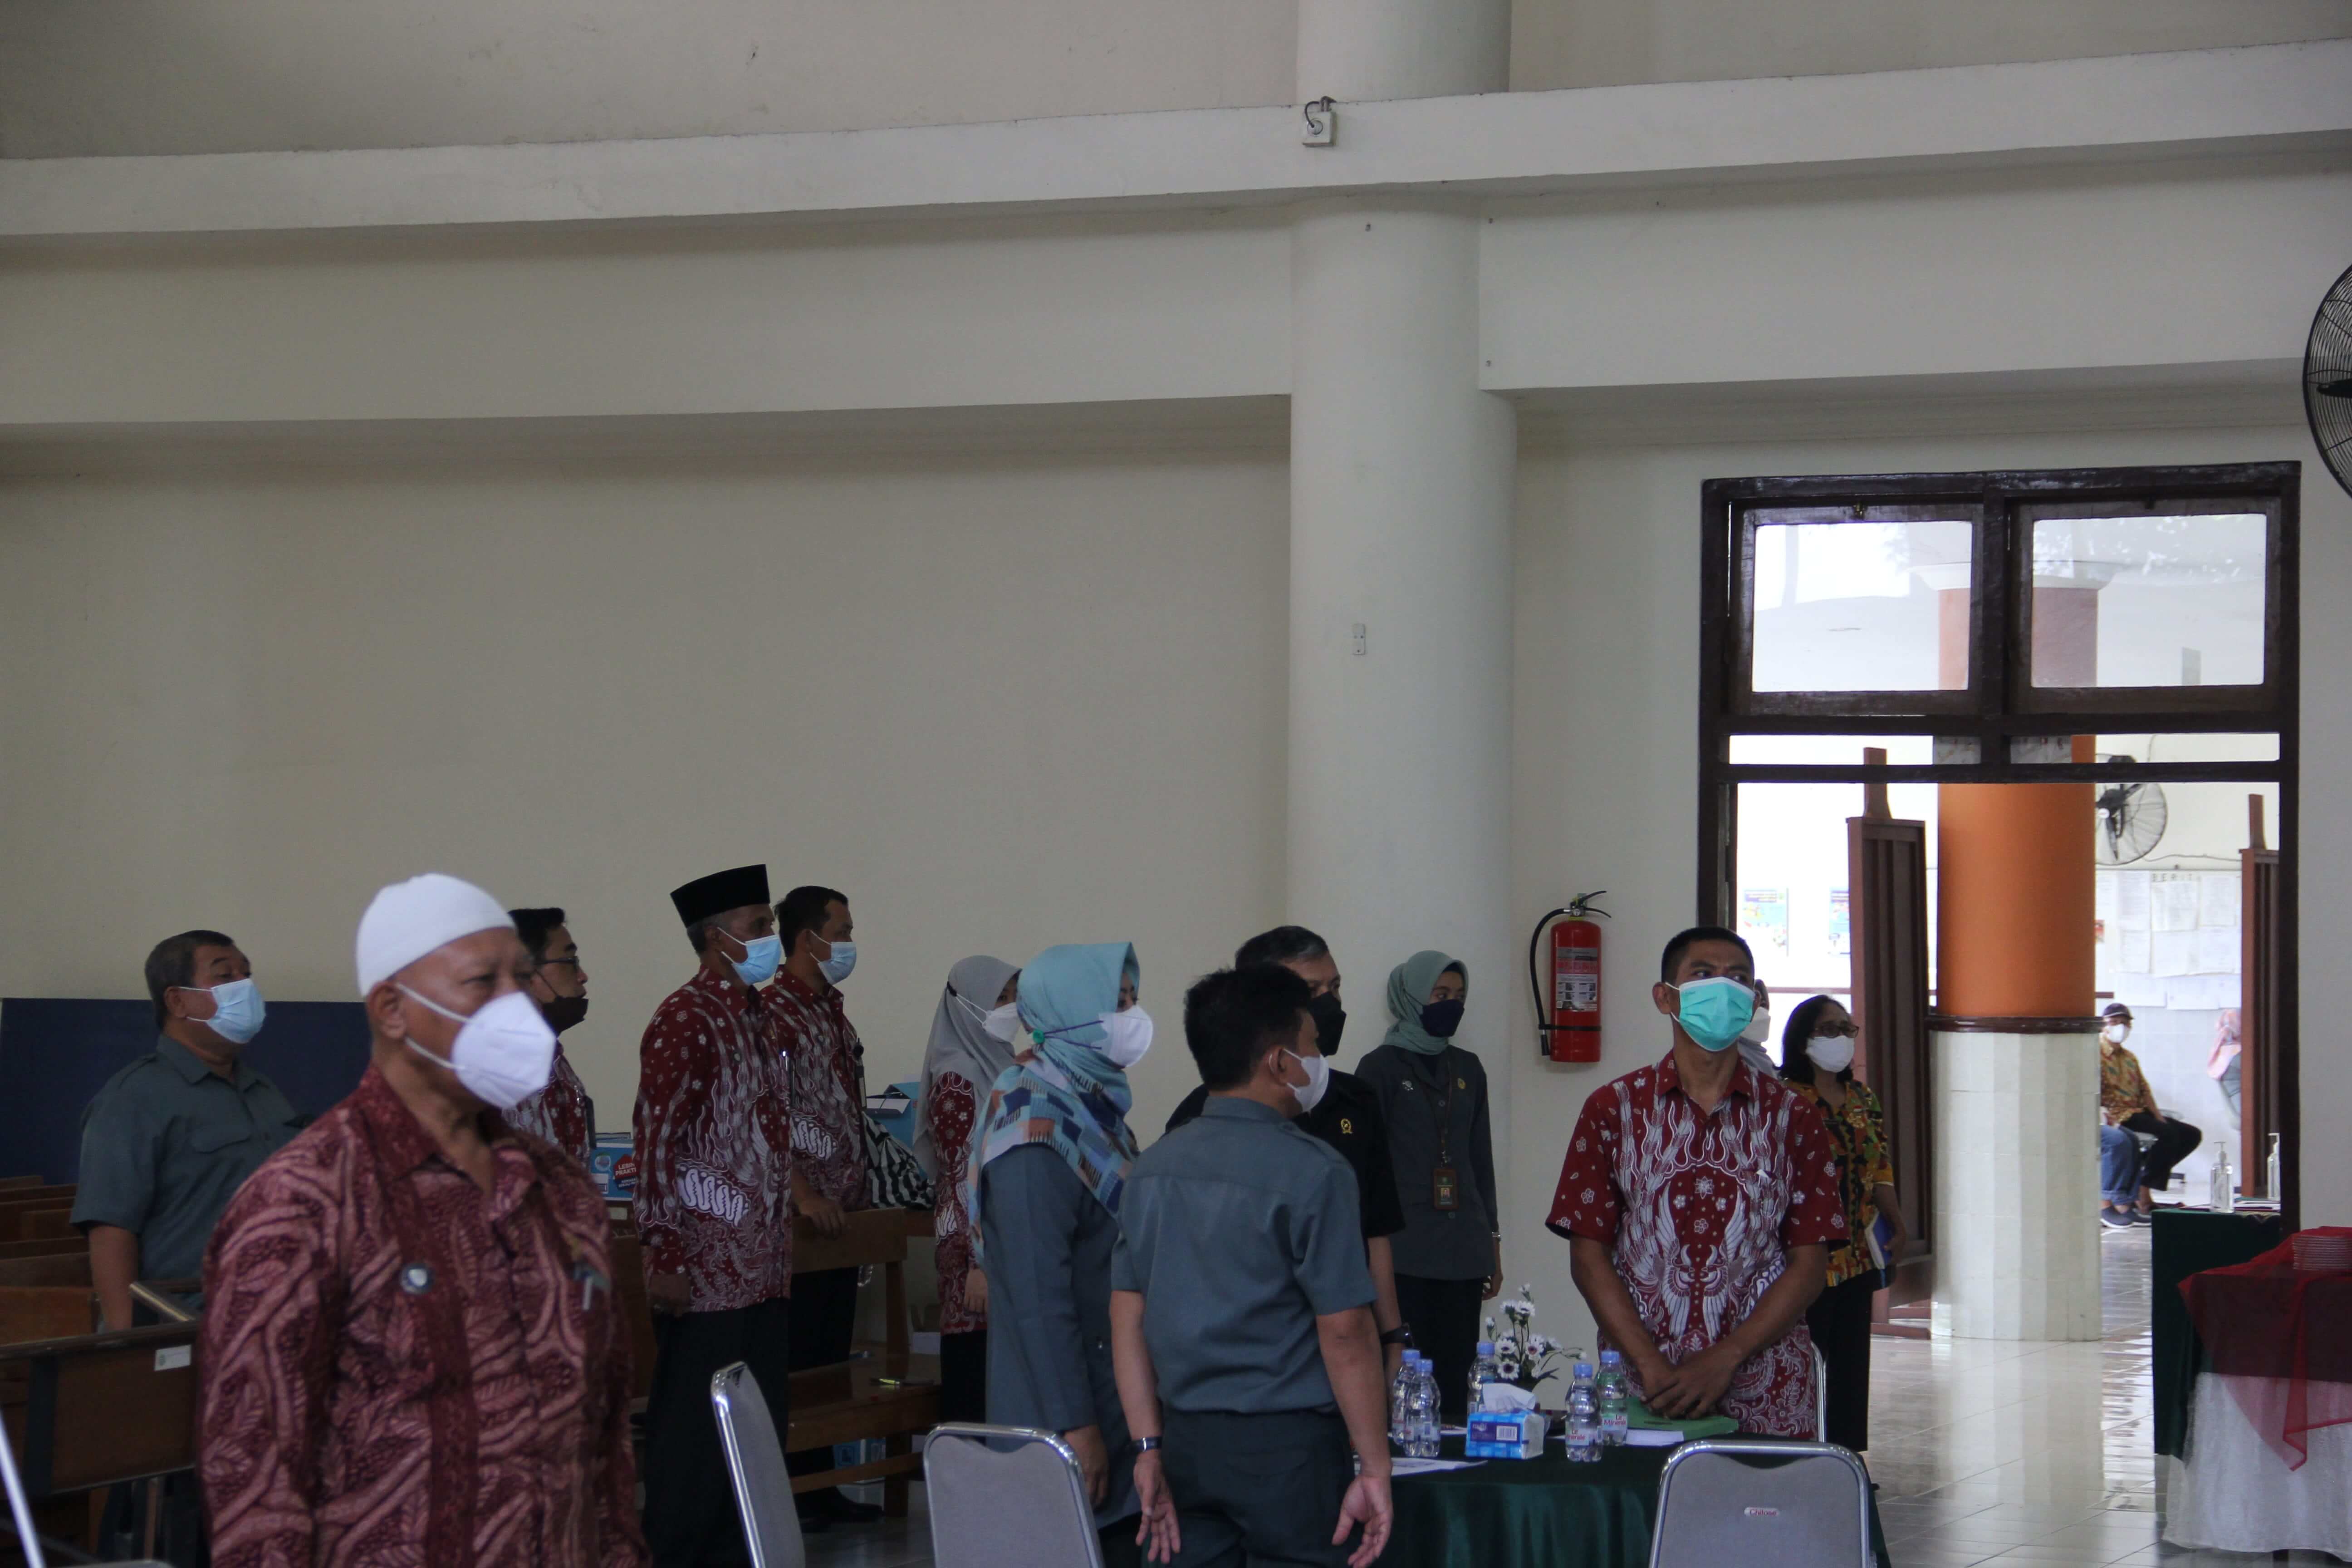 Rapat Koordinasi Teknis Penyelesaian Perkara Pelaksanaan Relaas Panggilan dan Eksekusi Pengadilan Negeri Yogyakarta